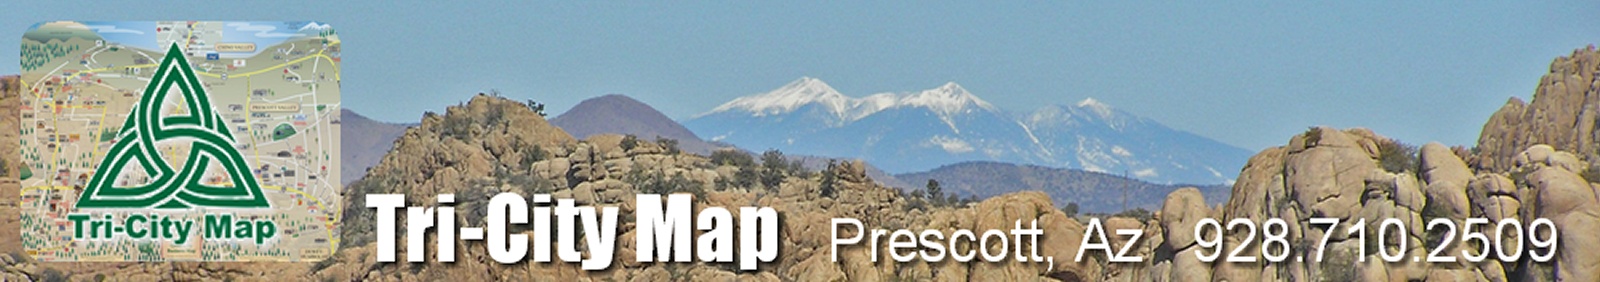 Prescott Map Order Request Form - Tri-City Map, LLC. - Prescott, Arizona